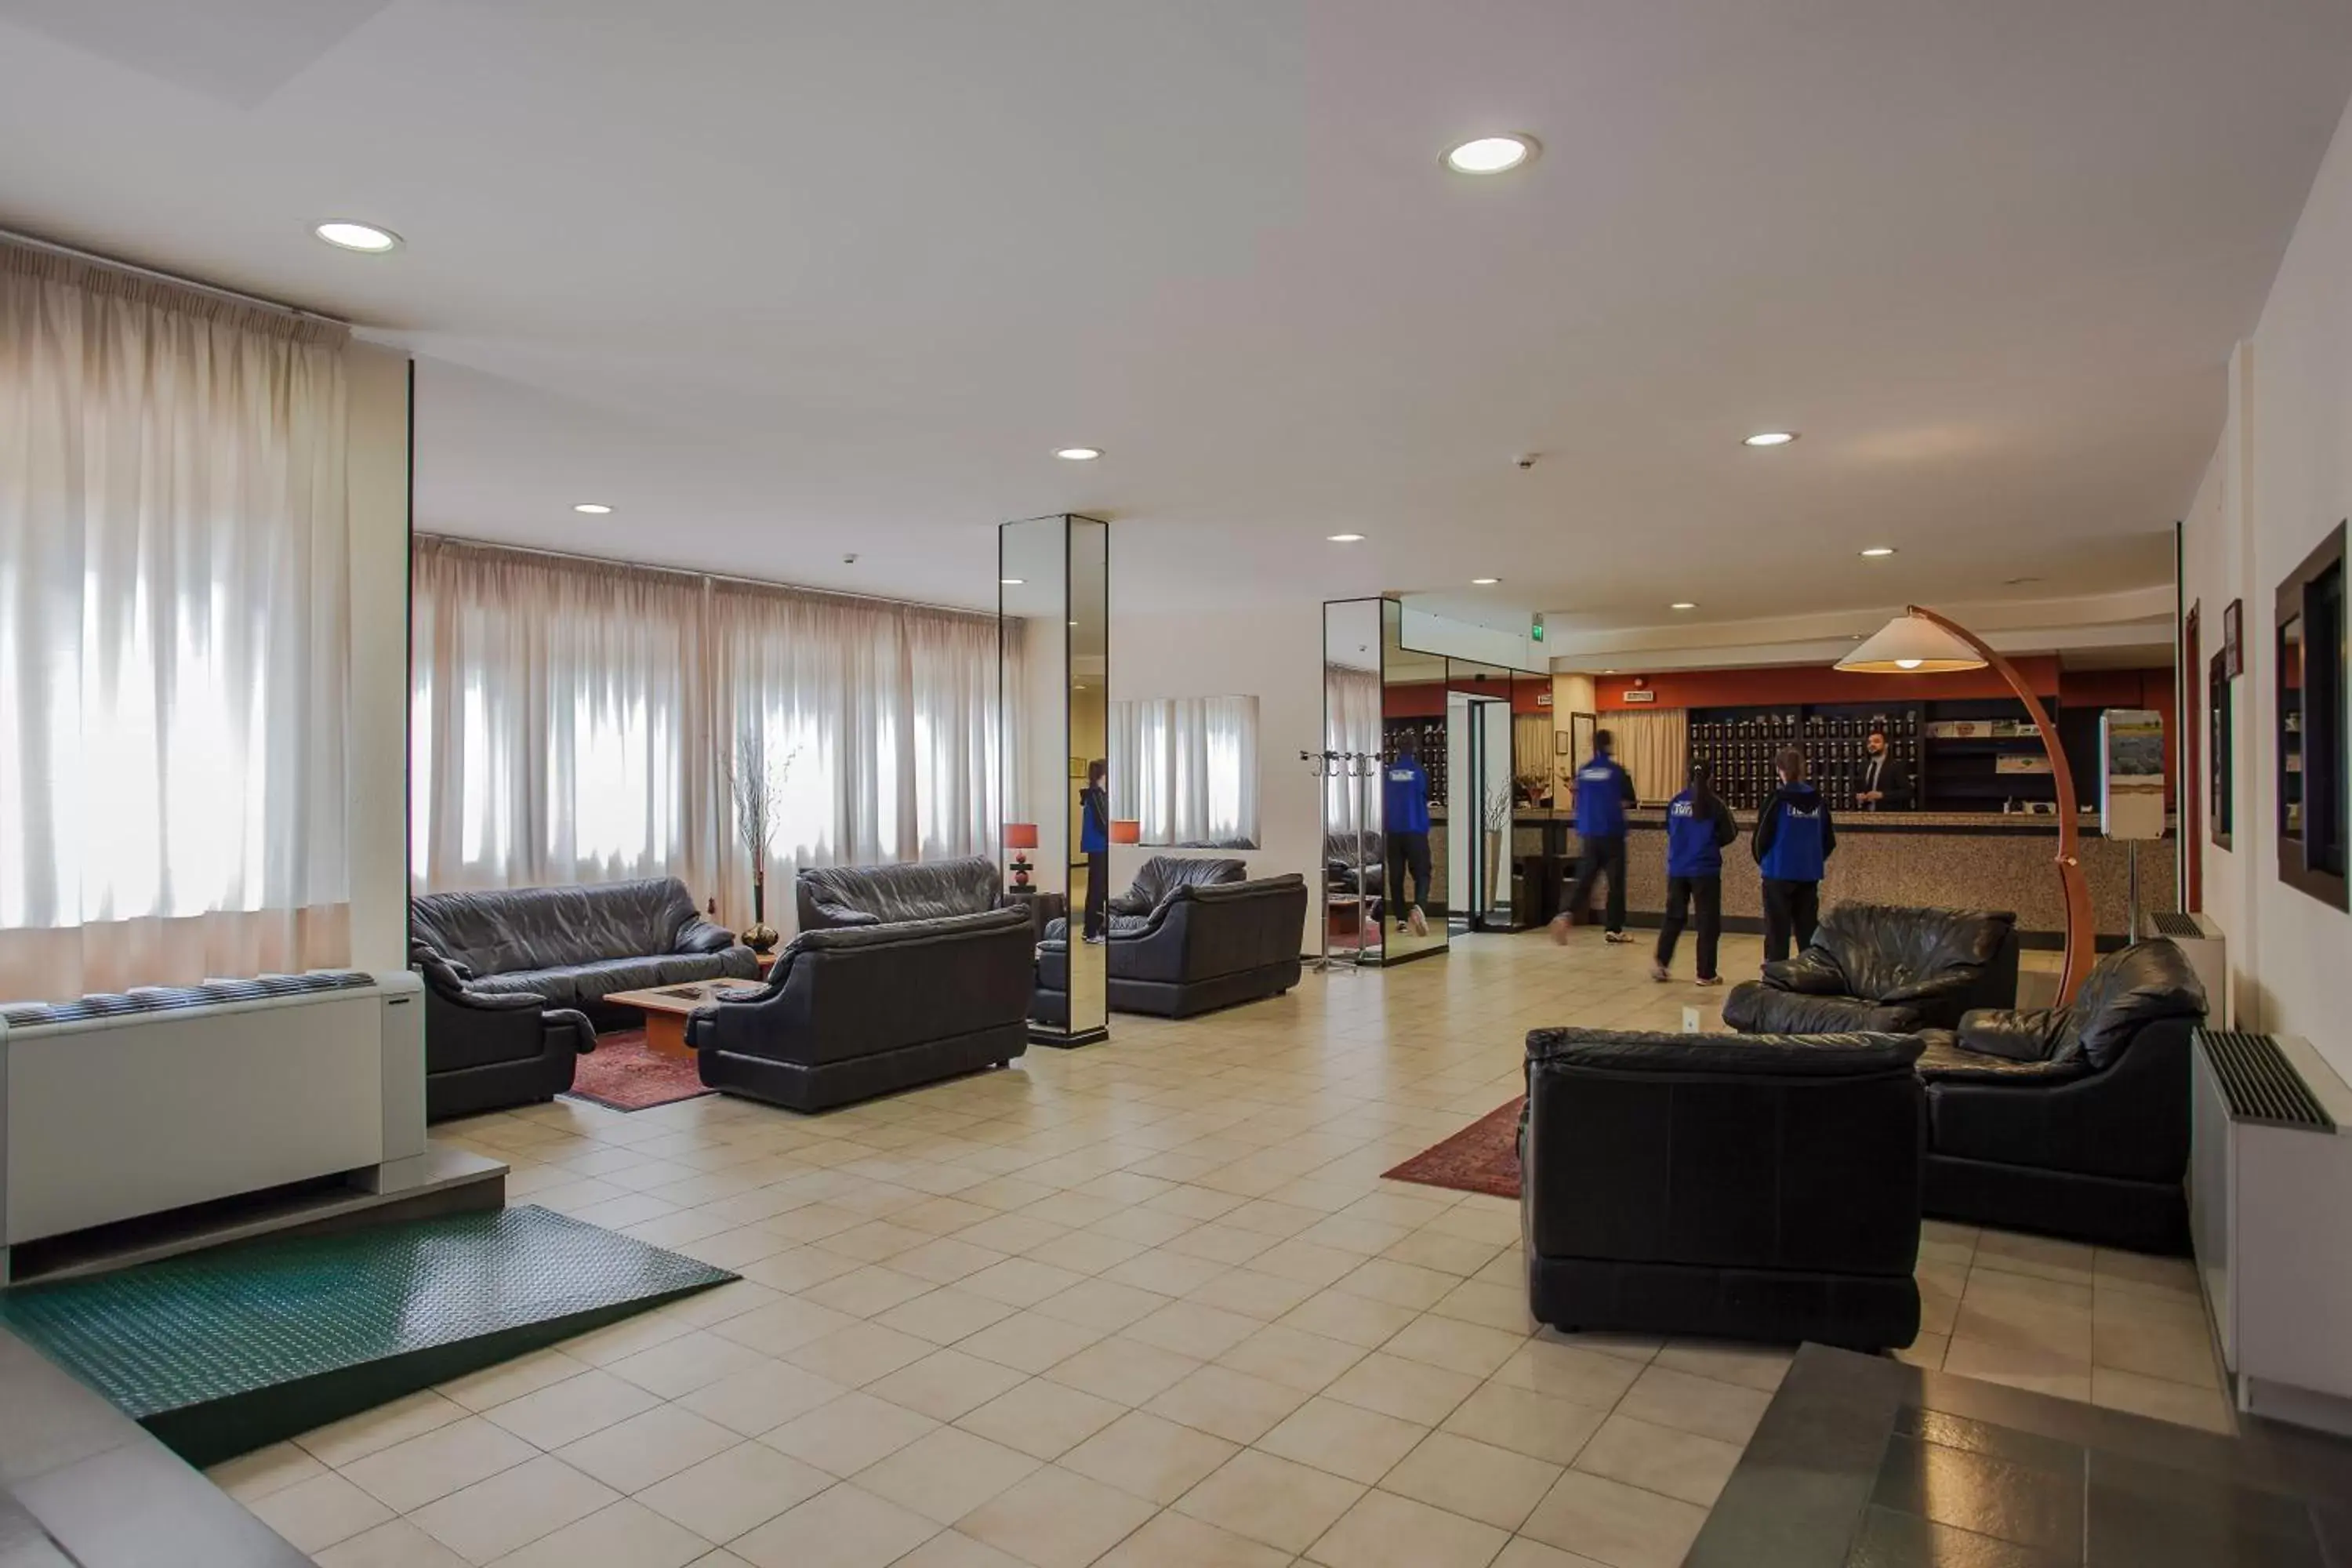 Lobby or reception, Lobby/Reception in Hotel Quadrifoglio